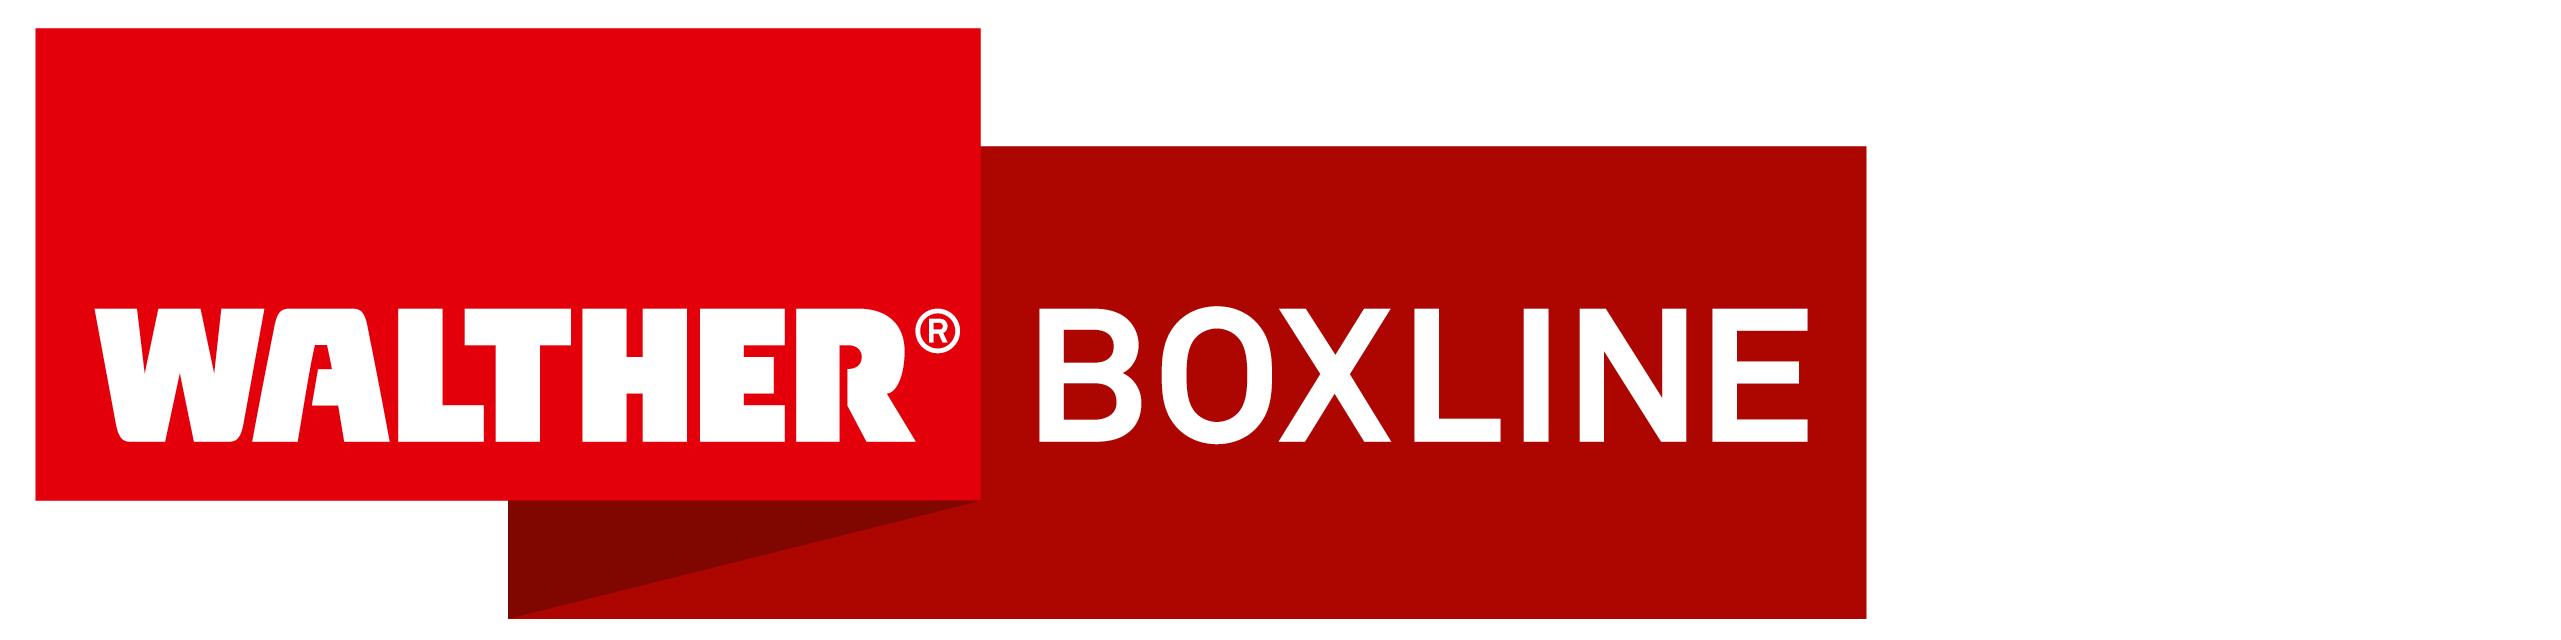 www.boxline.com/de Erfahrungen